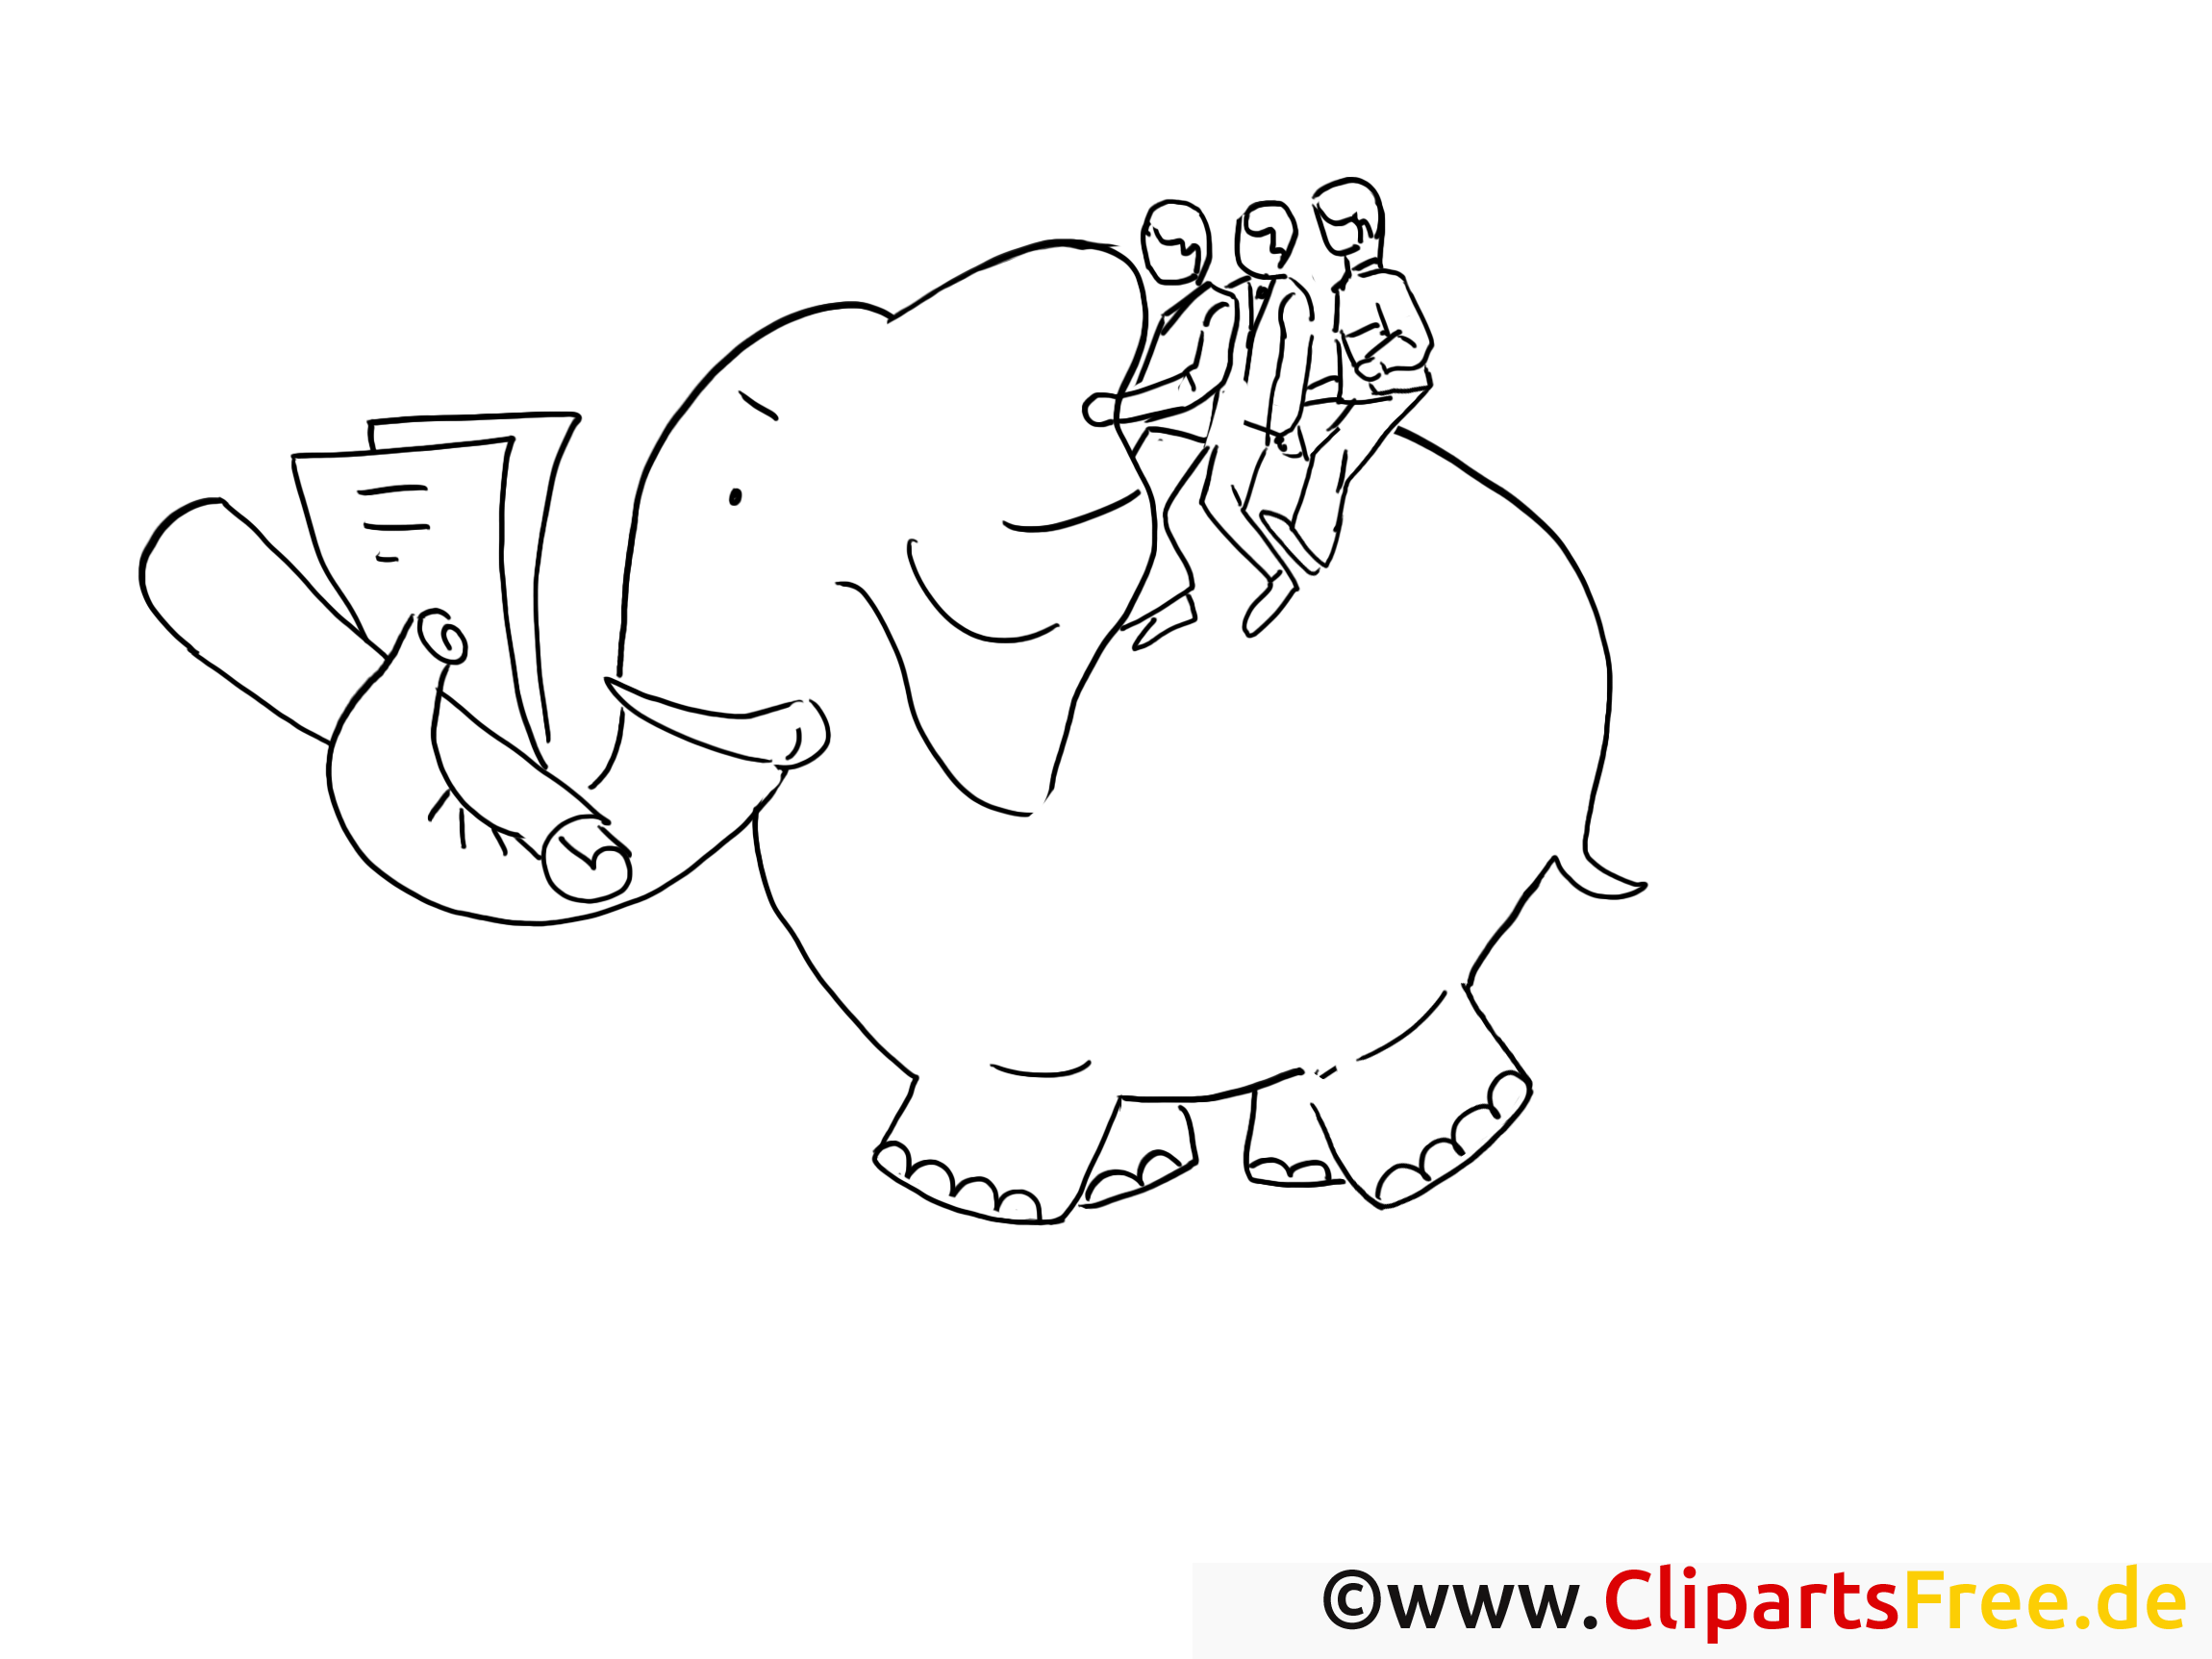 Éléphant image – Travail images à colorier